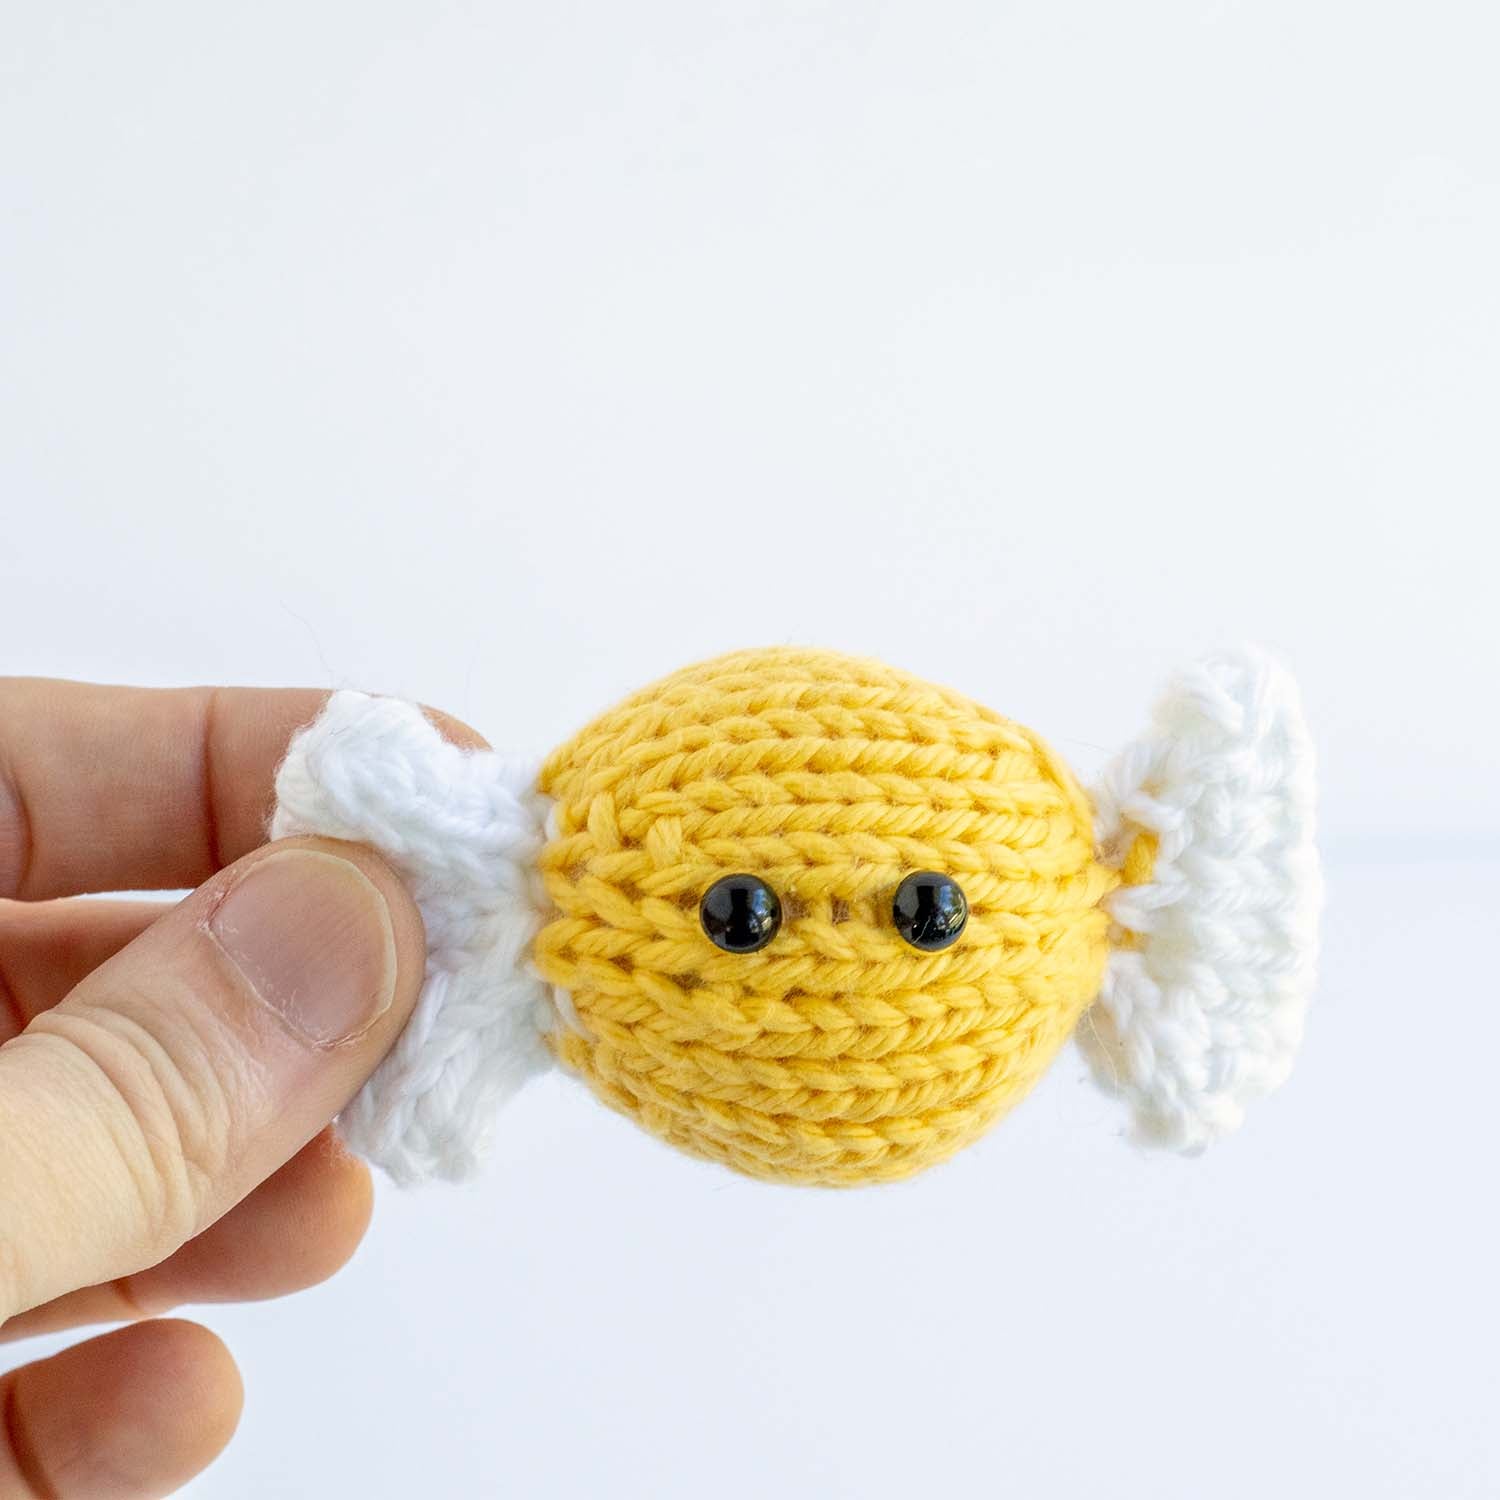 Hard Candy stuffed knitting pattern - PDF